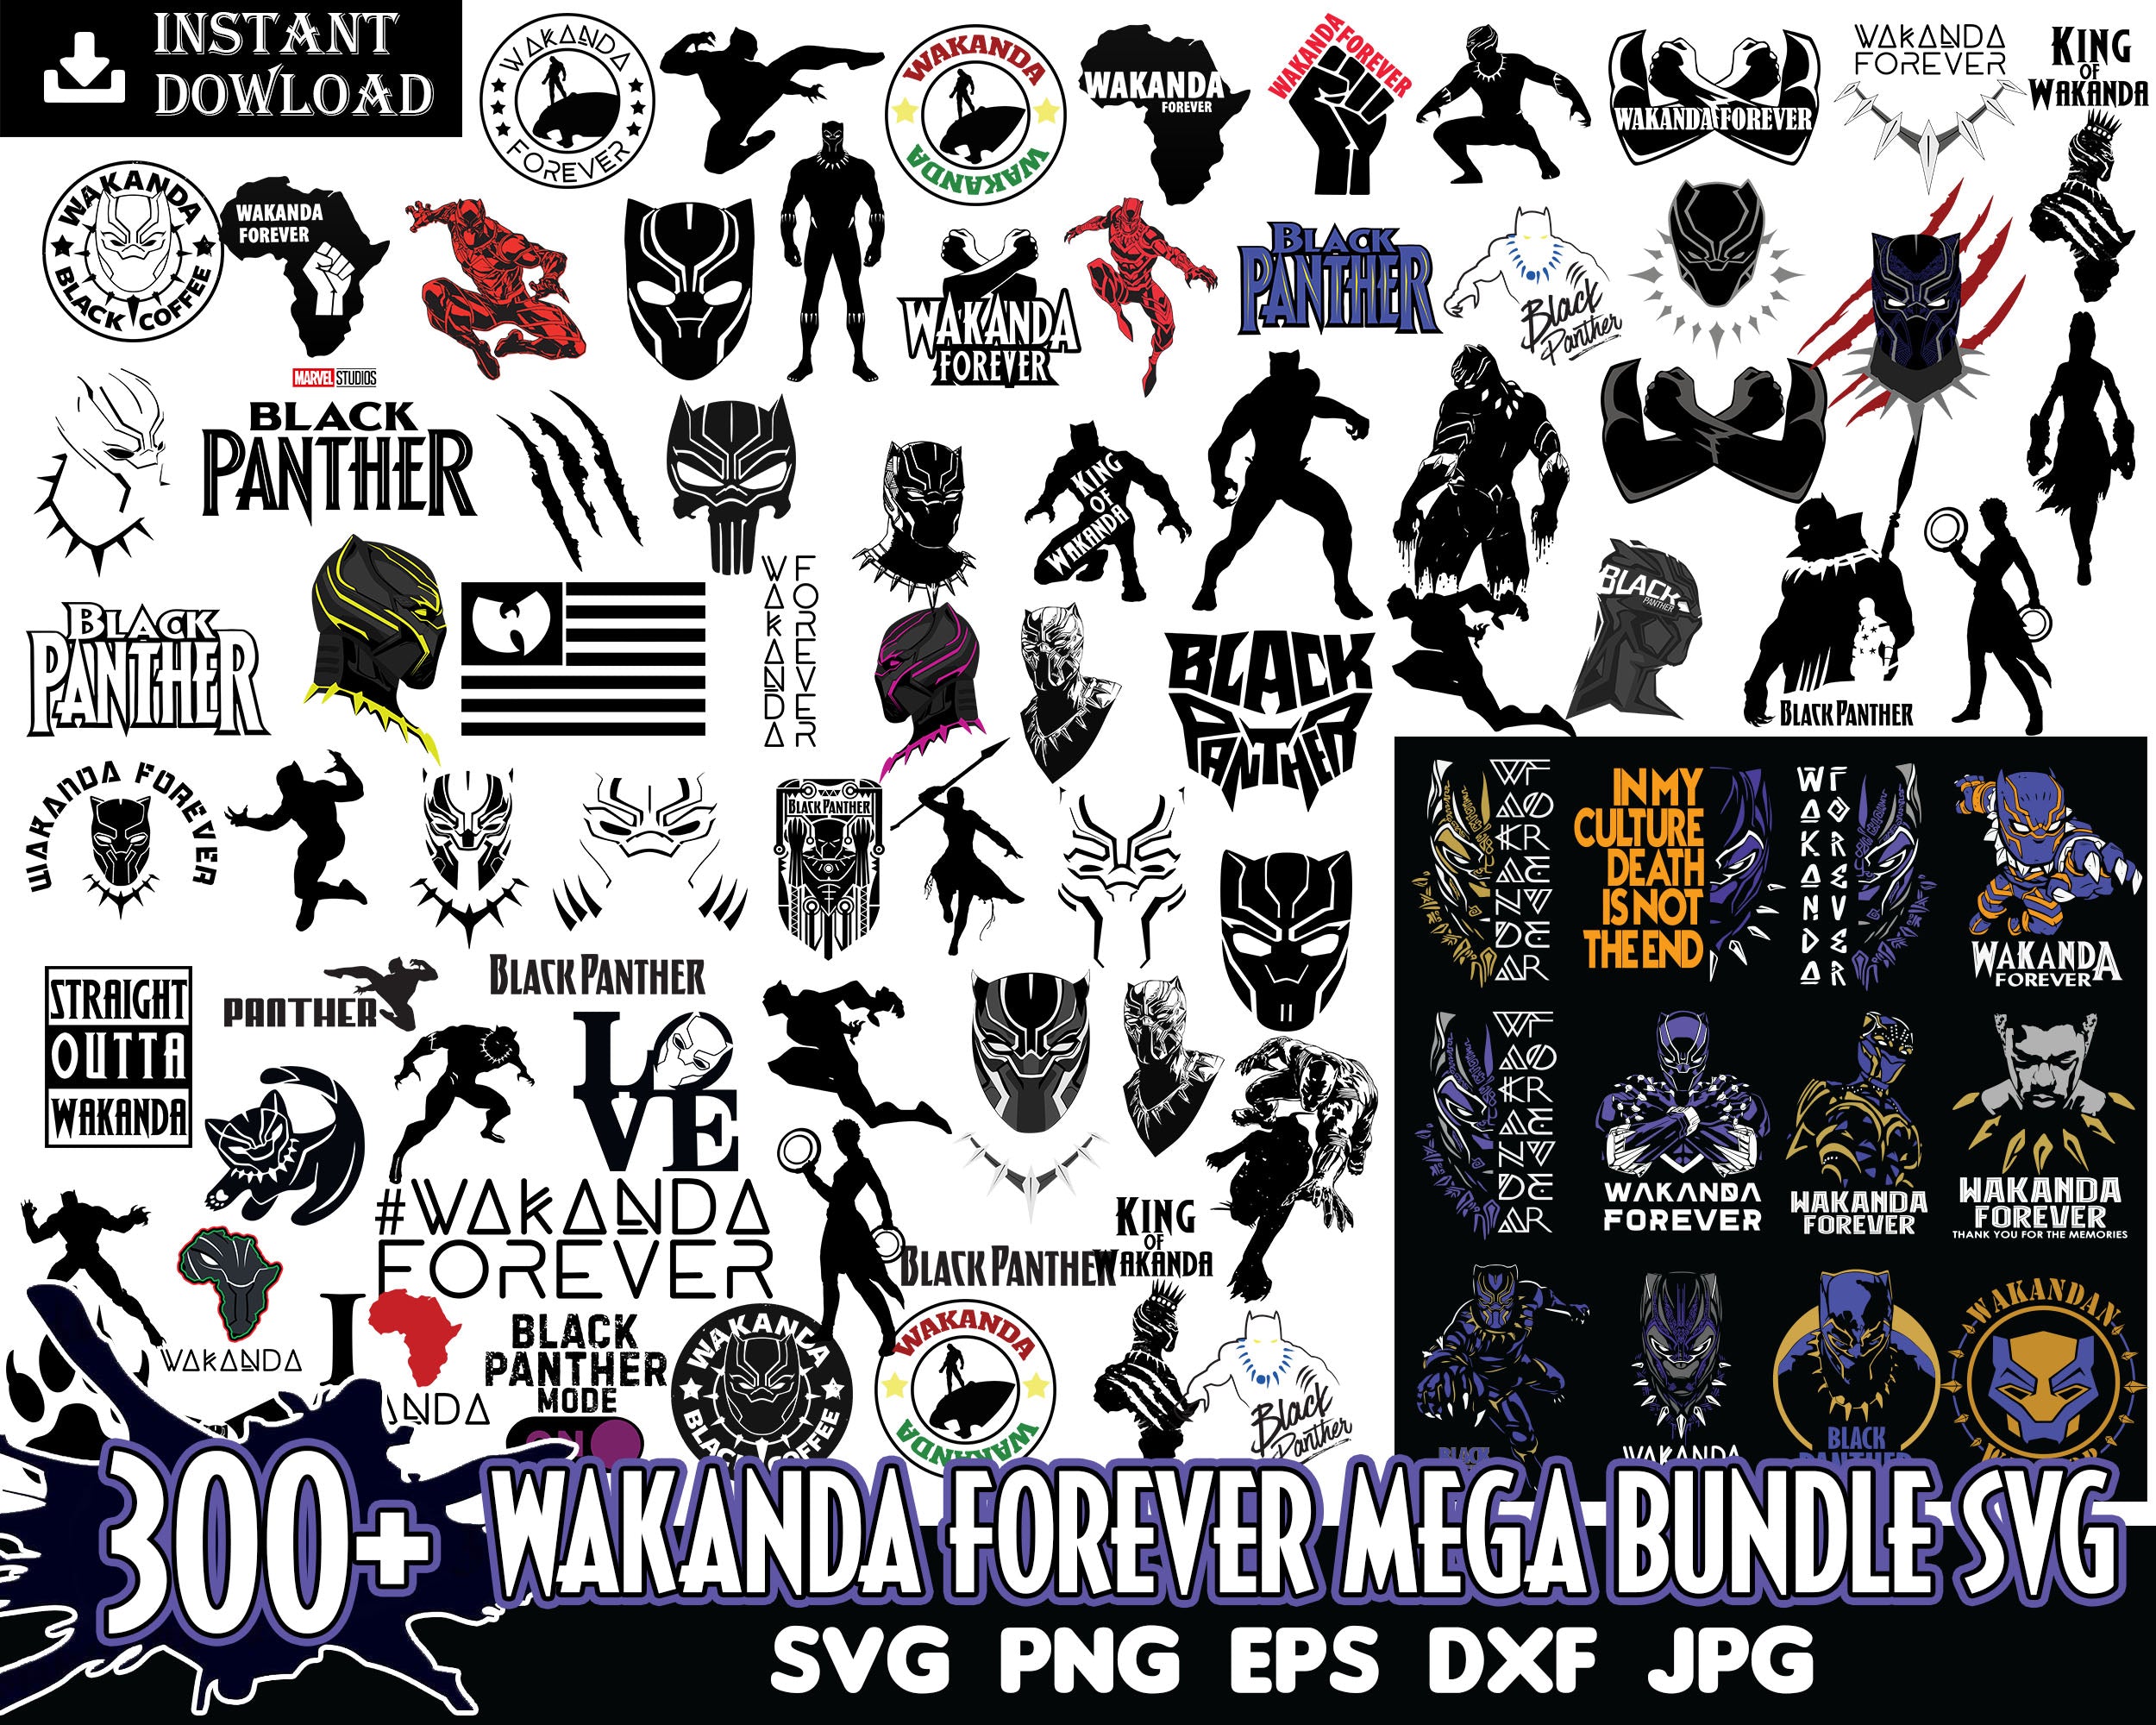 Version 2 - 300 Wakanda Forever bundle, Black Panther SVG PNG EPS DXF, Sublimation Design, Avenger svg bundle, Marvel bundle svg, Digital download